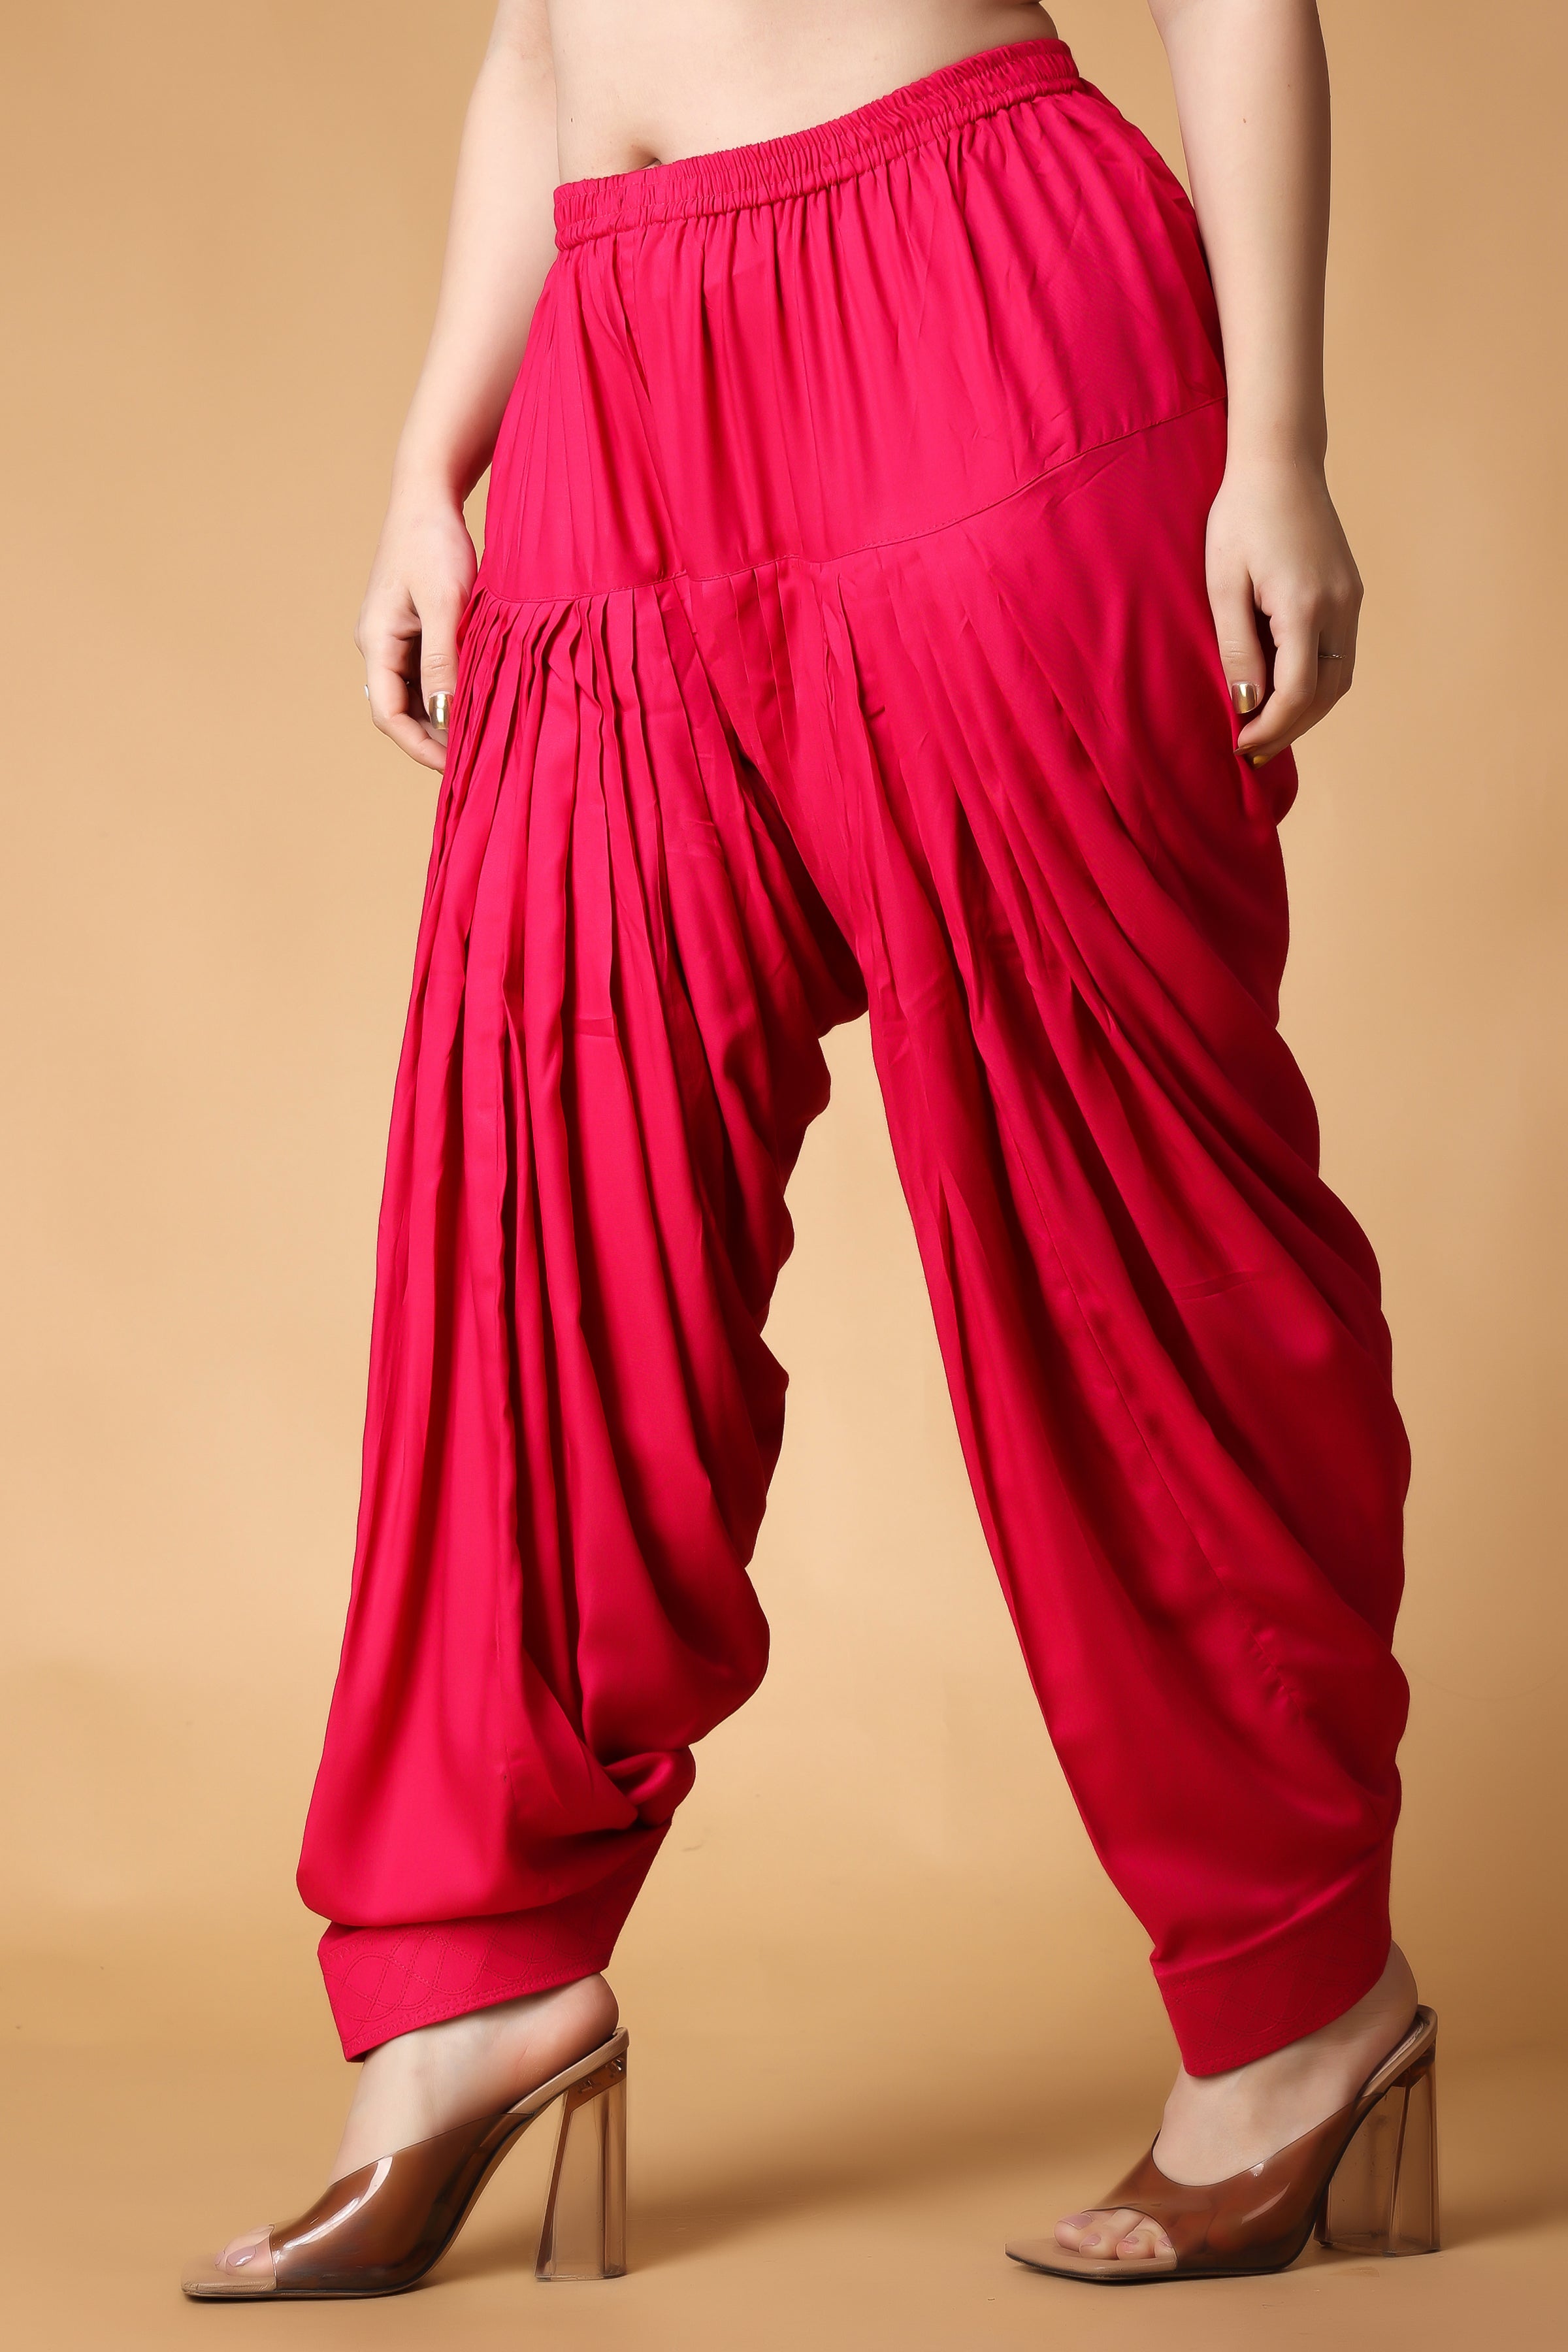 Patiala Suits - Shop Patiala Suit Designs Online | Patiala Dress US UK